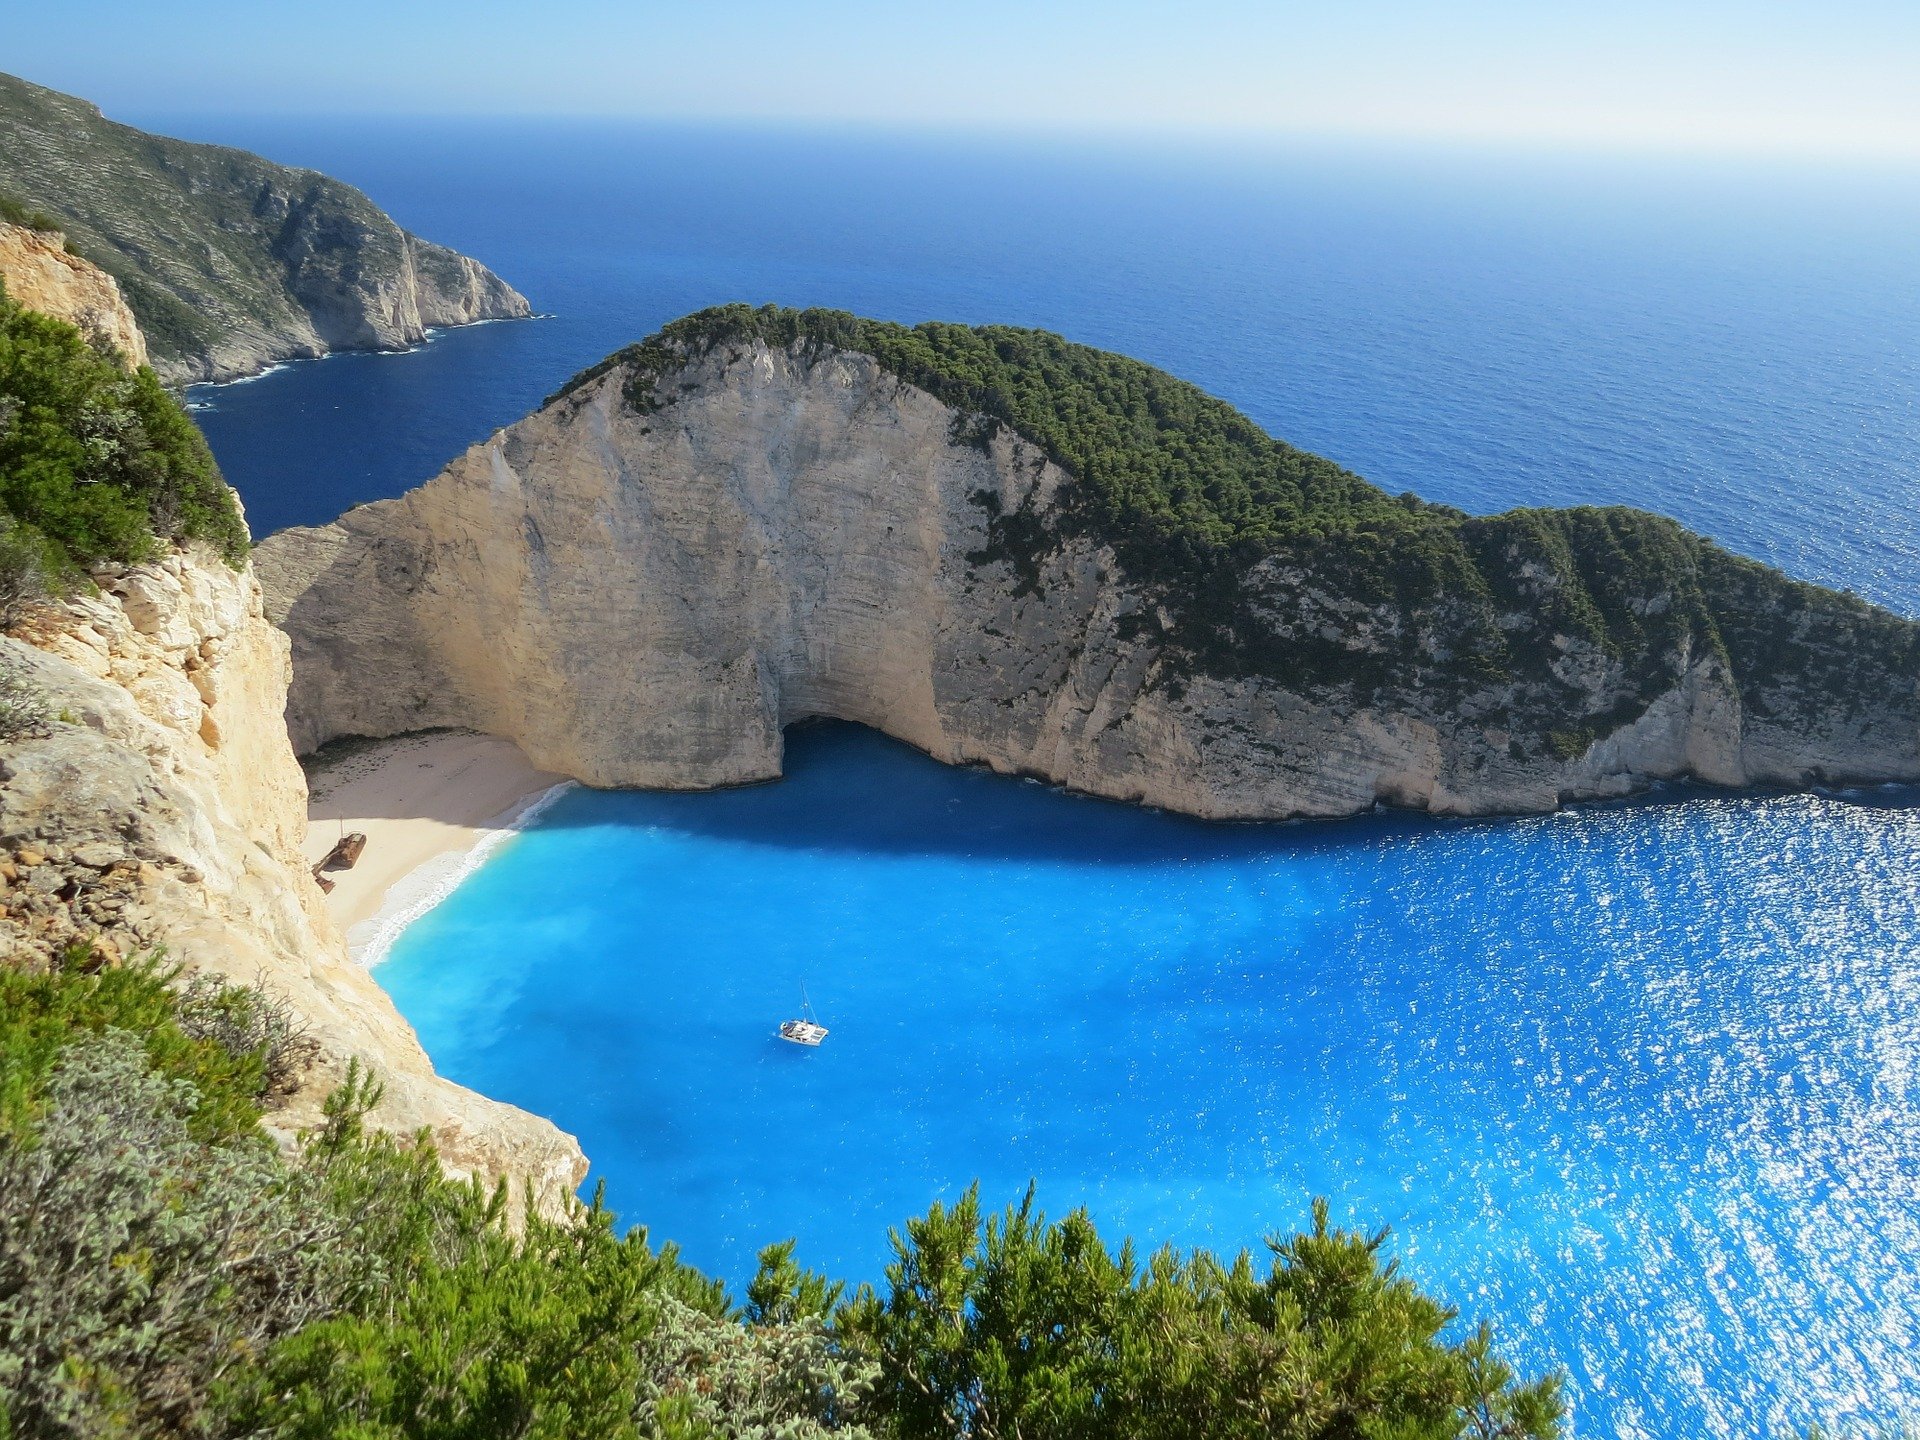 Les 5 îles grecques les plus célèbres du monde - Les 5 îles grecques les plus célèbres du monde